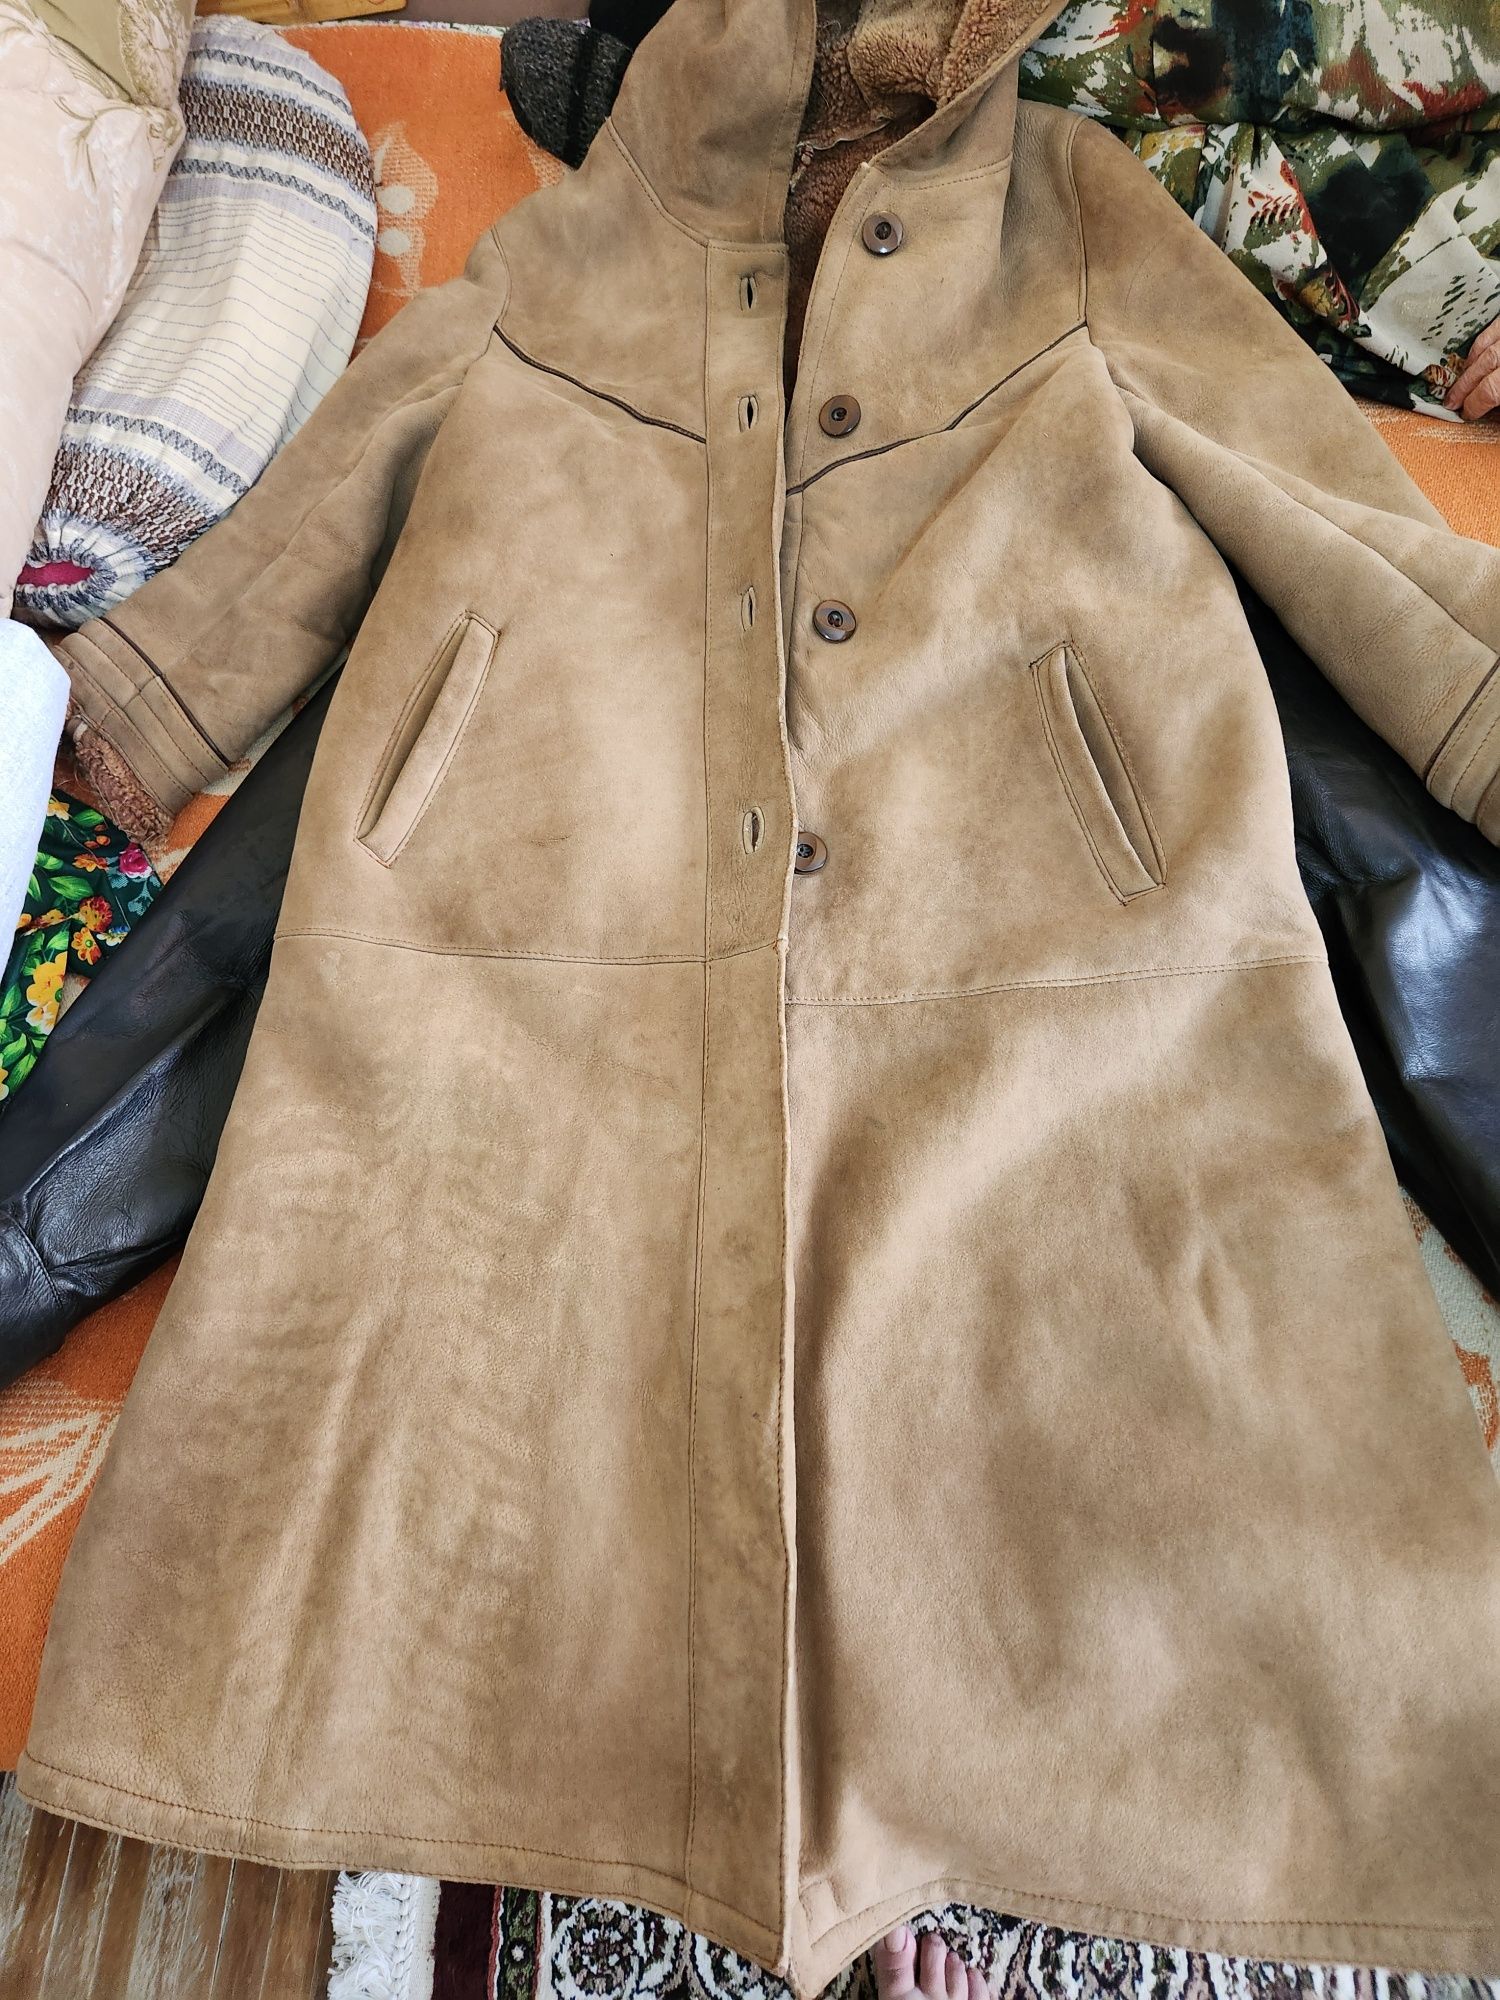 Пальто новое 52, 54 размера хорошего качества, осенне зимнее, разсер п